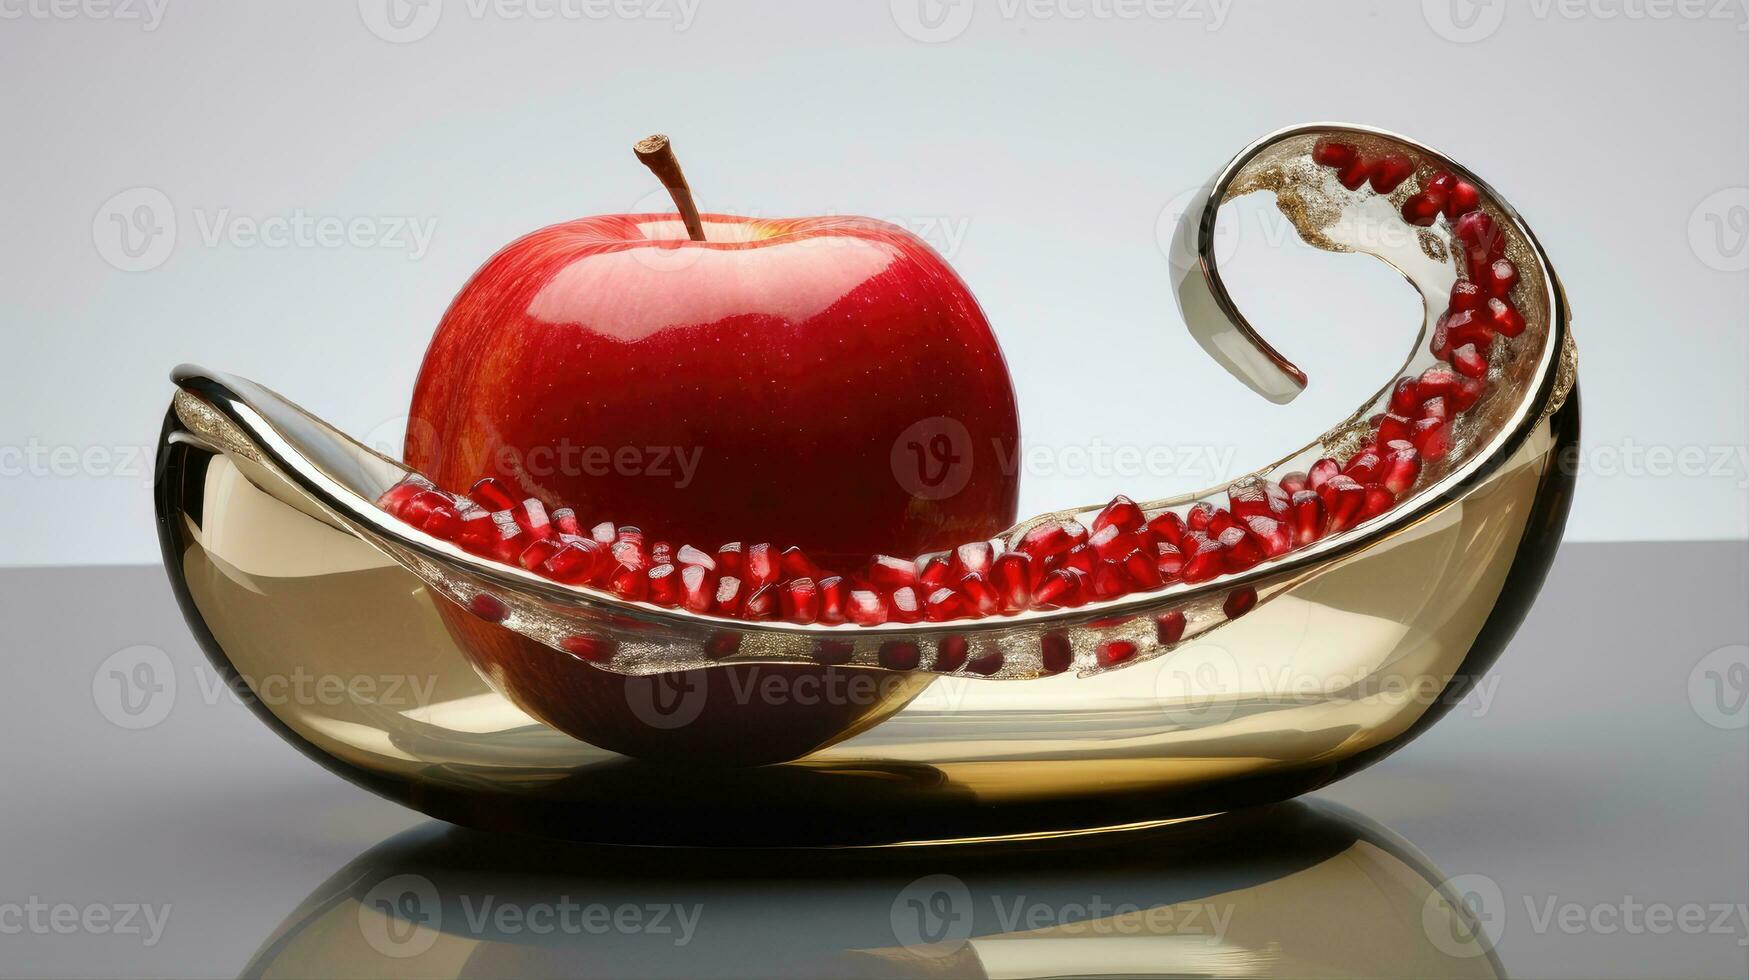 rosh hashaná es el concepto de el judío fiesta de el nuevo año. cuenco de manzana con Miel, granada y velas son tradicional símbolos de el día festivo. 3d representación foto